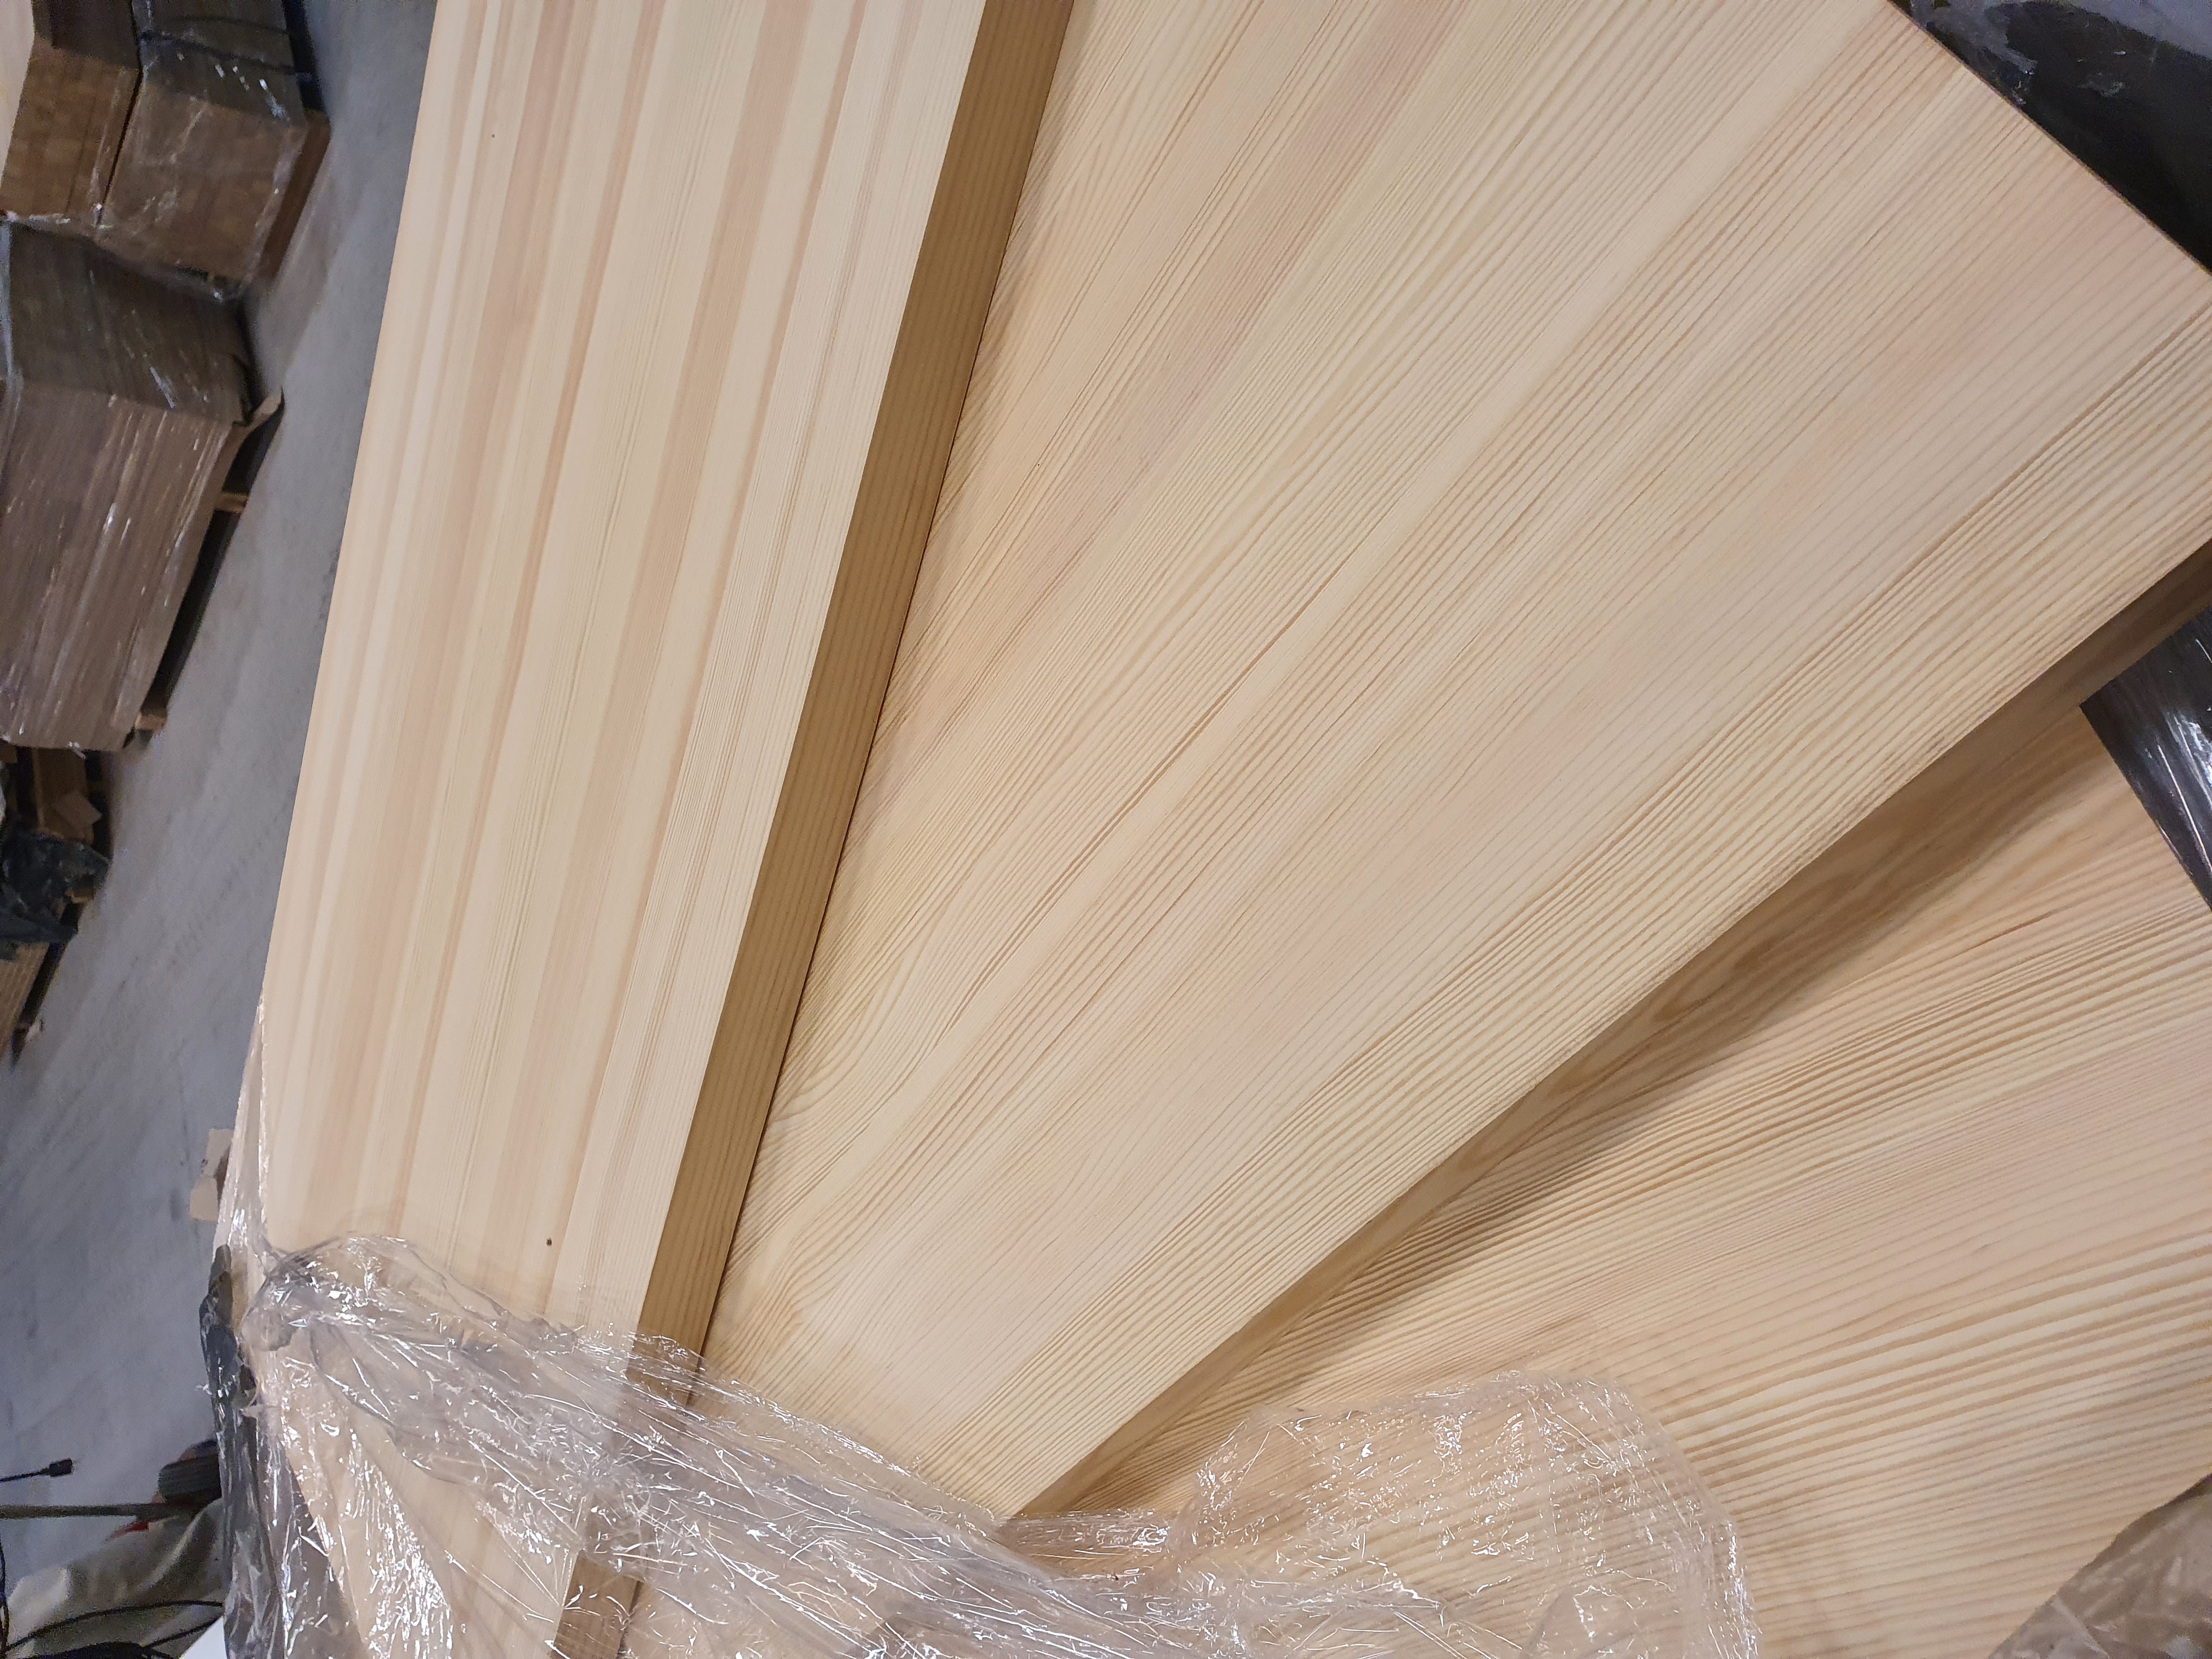 Doanh nghiệp Thụy Điển cần tìm nhà sản xuất các tấm gỗ dán (glued panels)